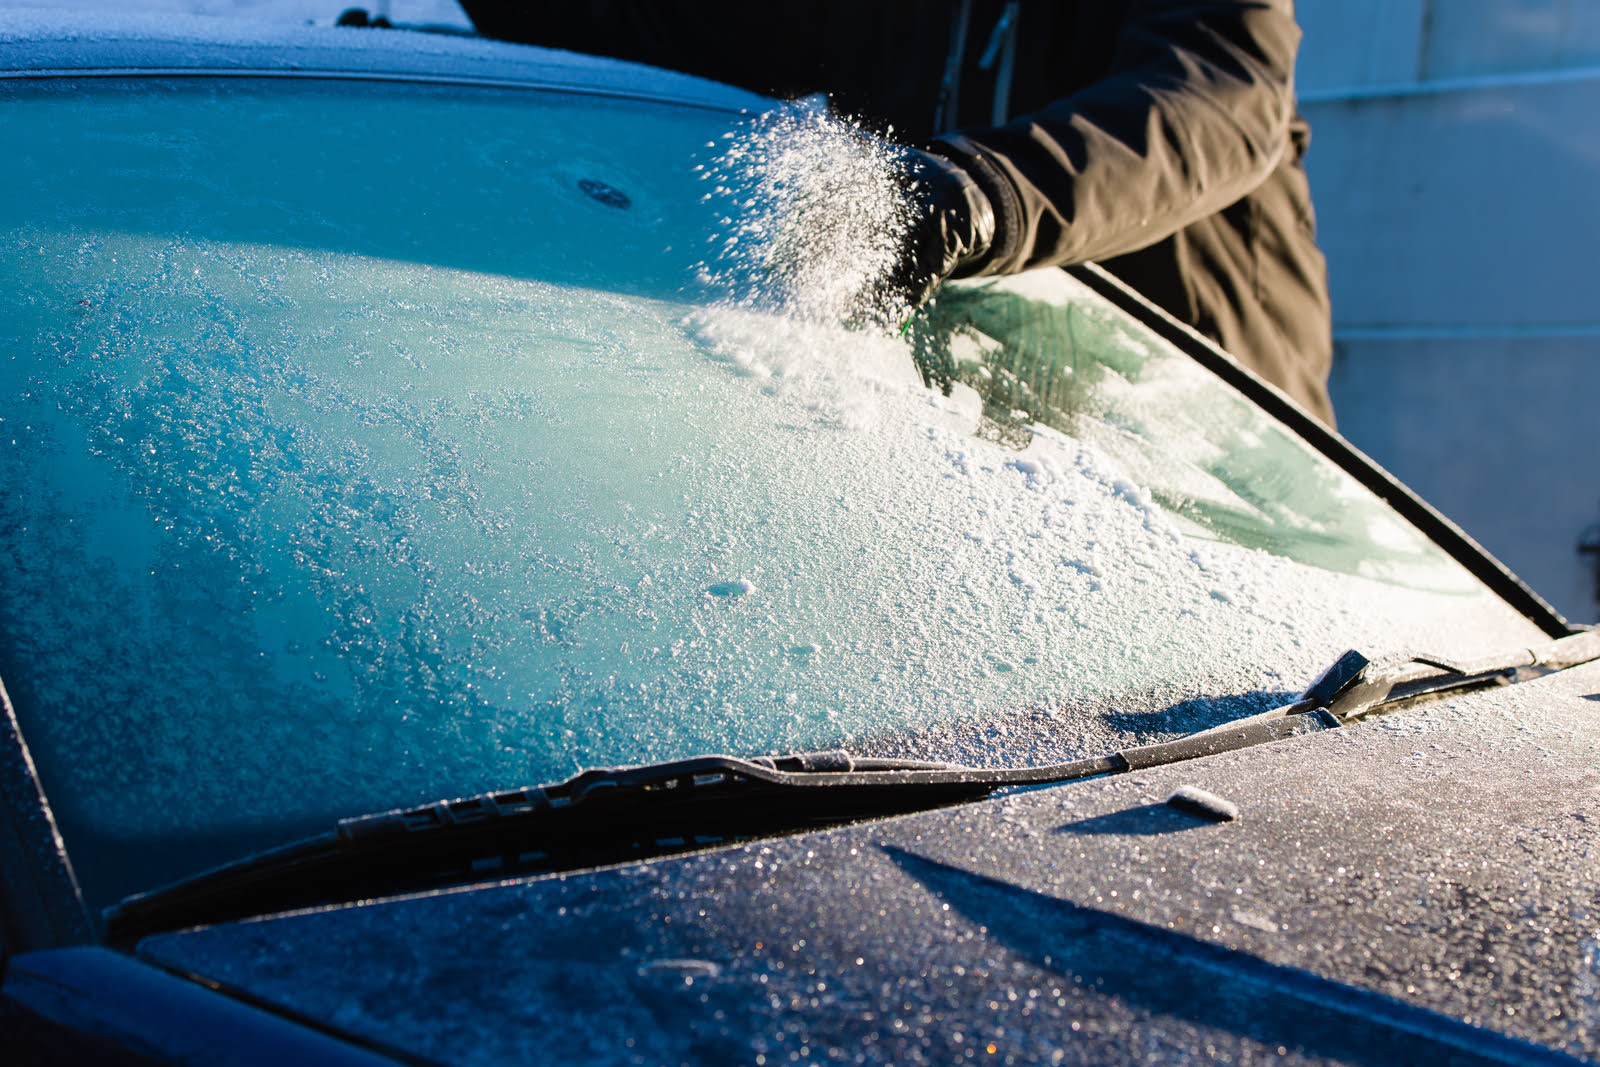 Щетки для очистки автомобиля от снега — недорогие, средние и элитные модели